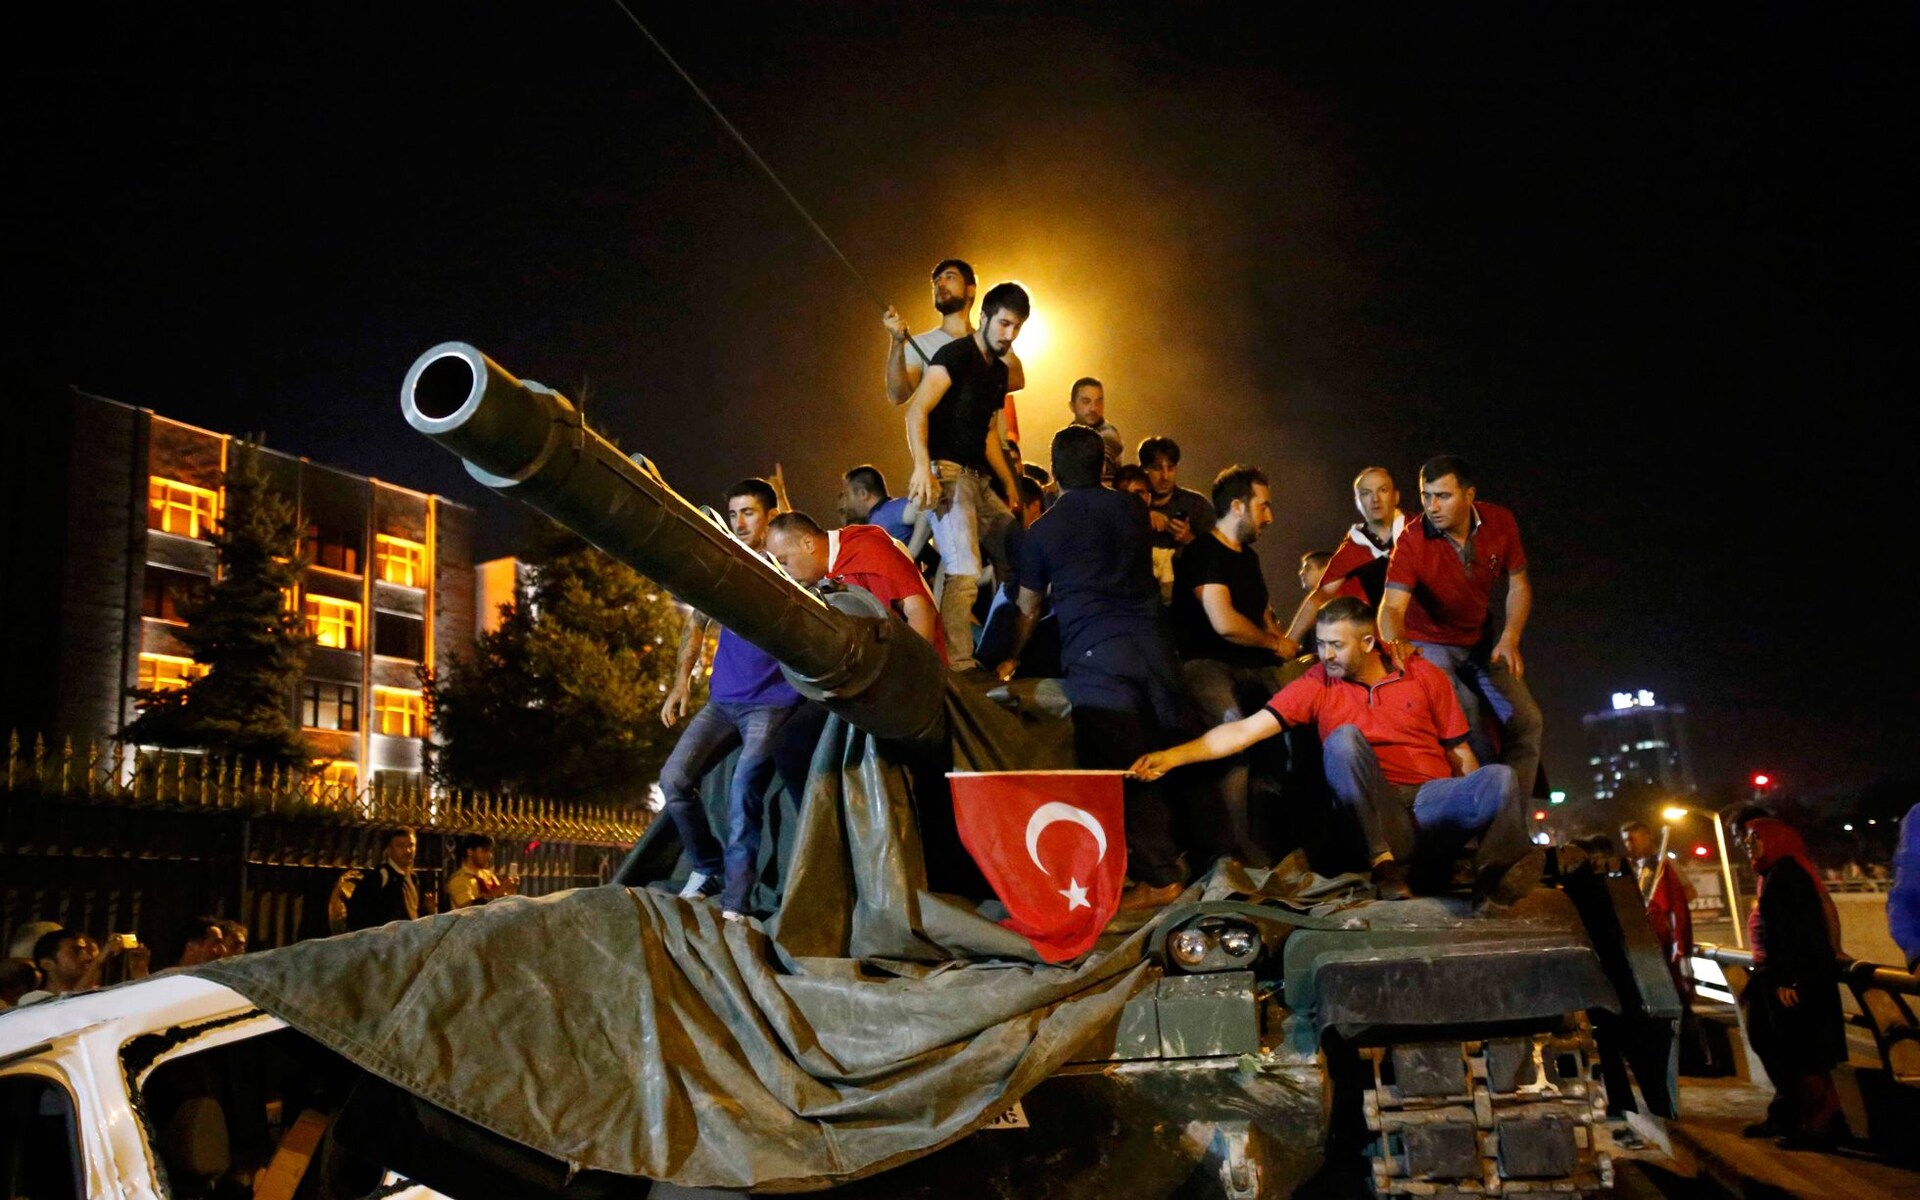 Des hommes se tiennent sur un tank lors de la tentative de coup d’État à Ankara, dans la nuit du 15 au 16 juillet 2016 (Reuters)